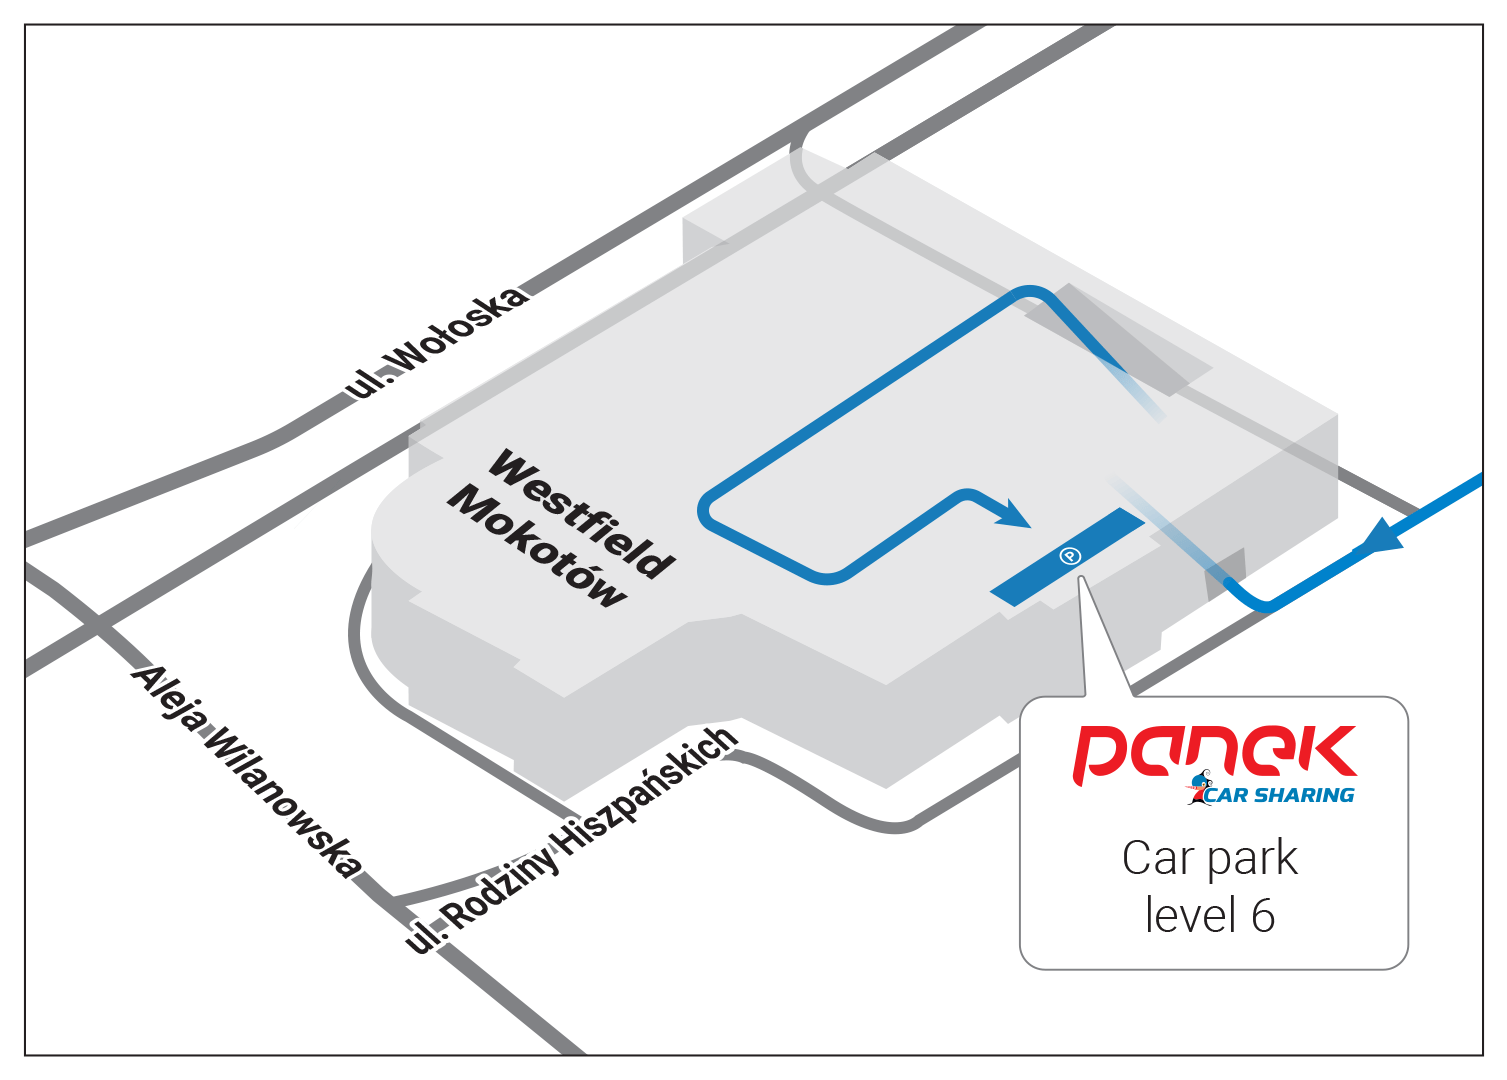 Mapa Panek - carsharing